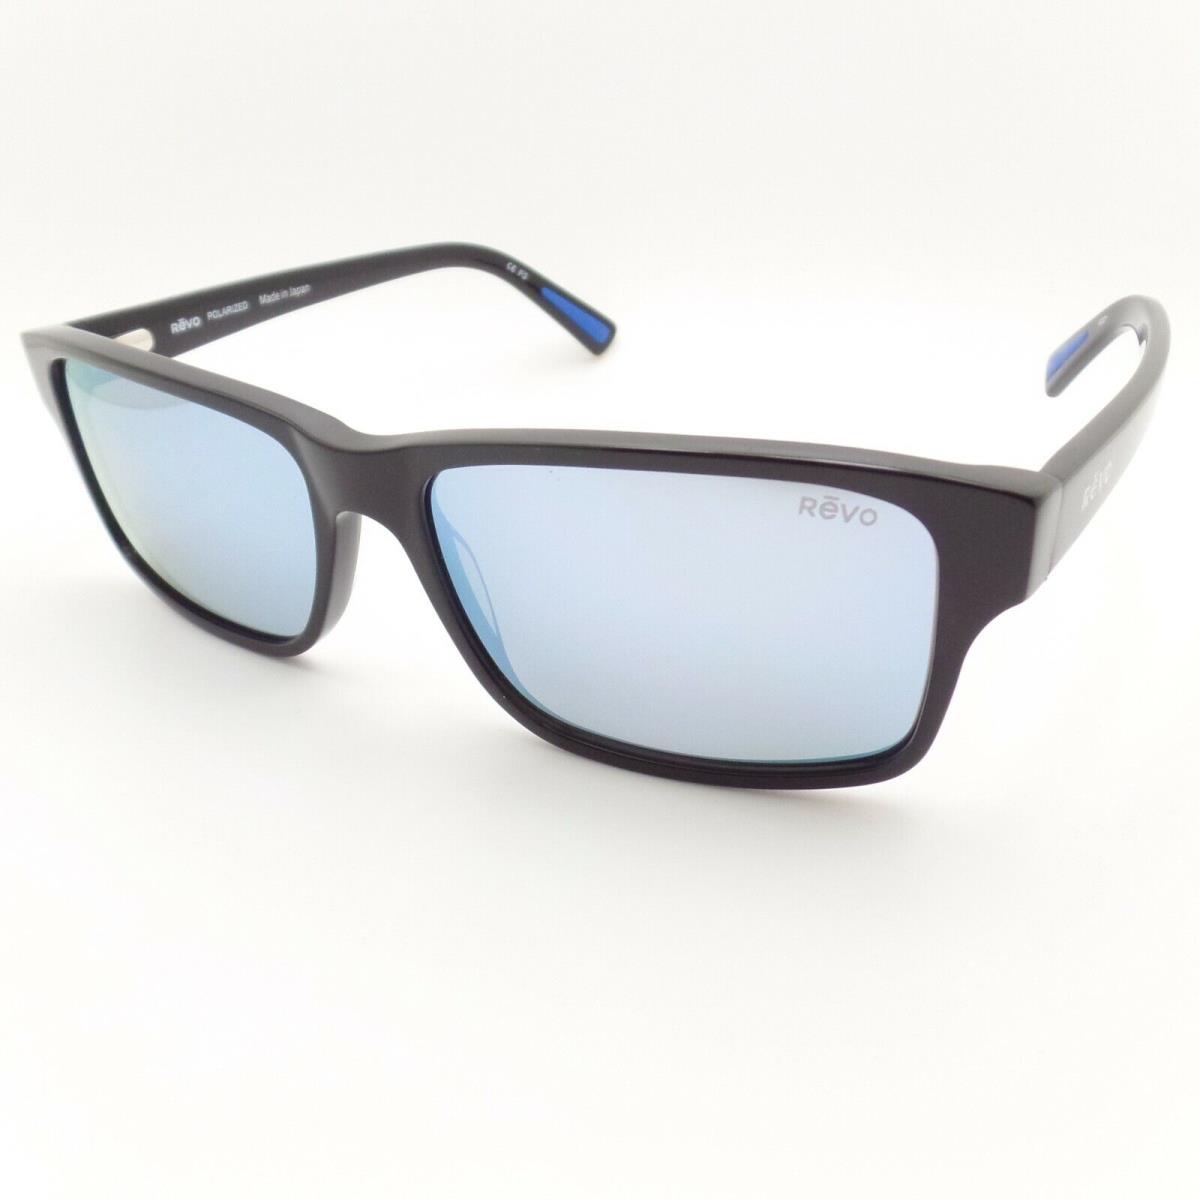 Revo sunglasses Finley - Black Gloss , Blue Water Lens